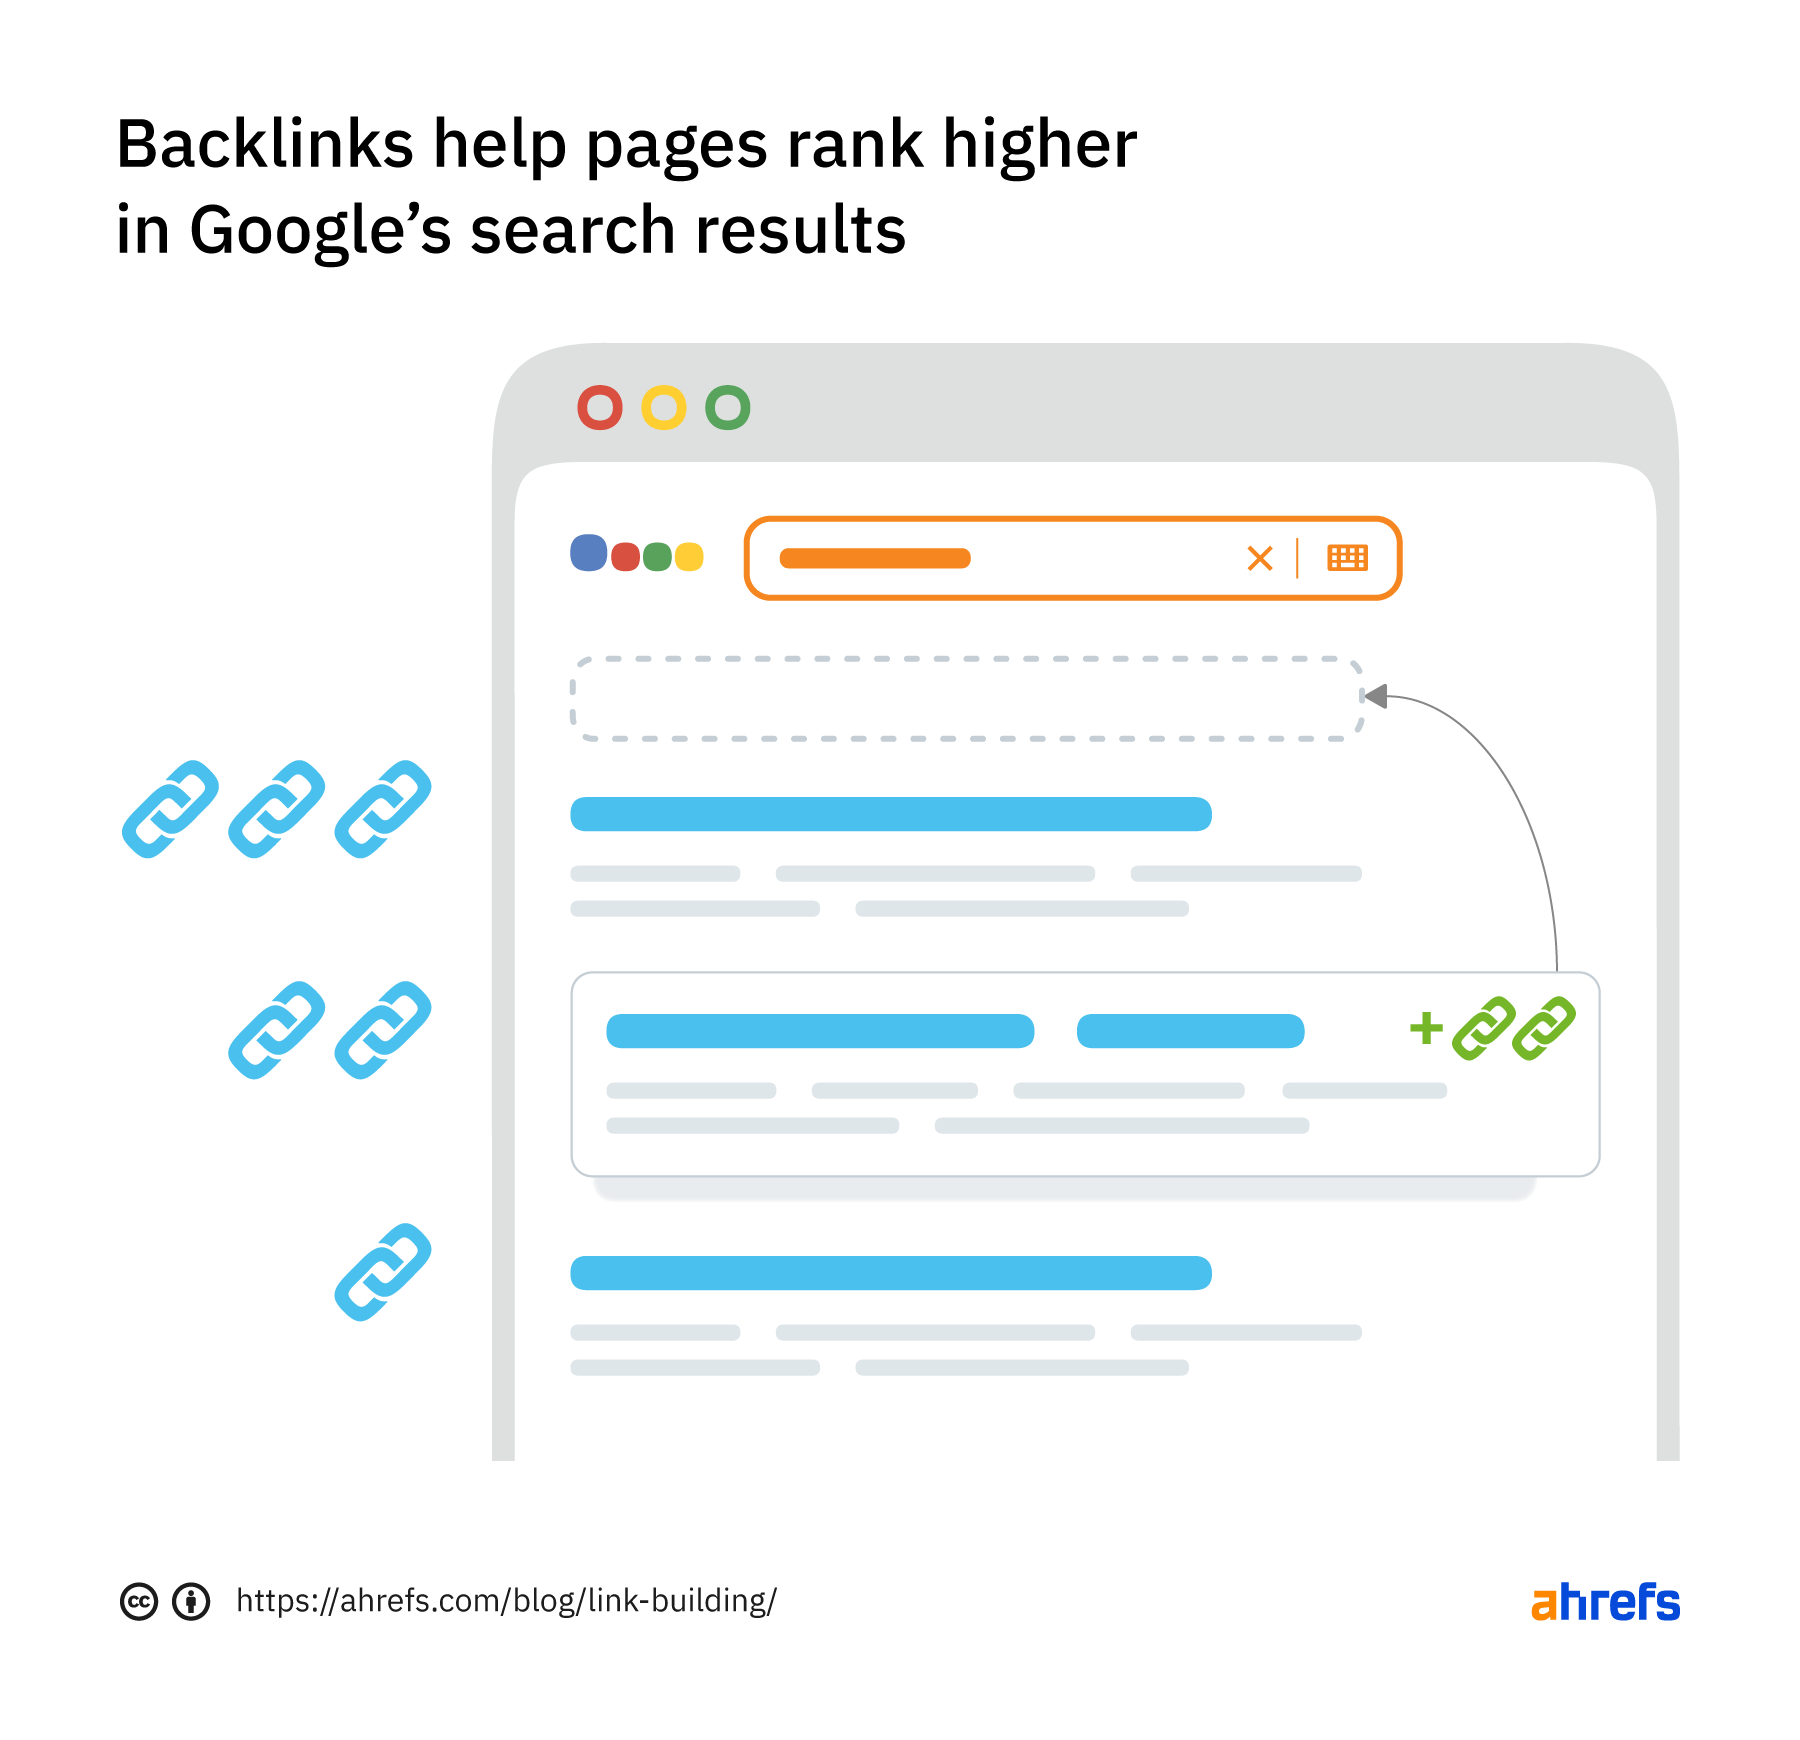 Los backlinks ayudan a las páginas a posicionarse más alto en los resultados de búsqueda de Google